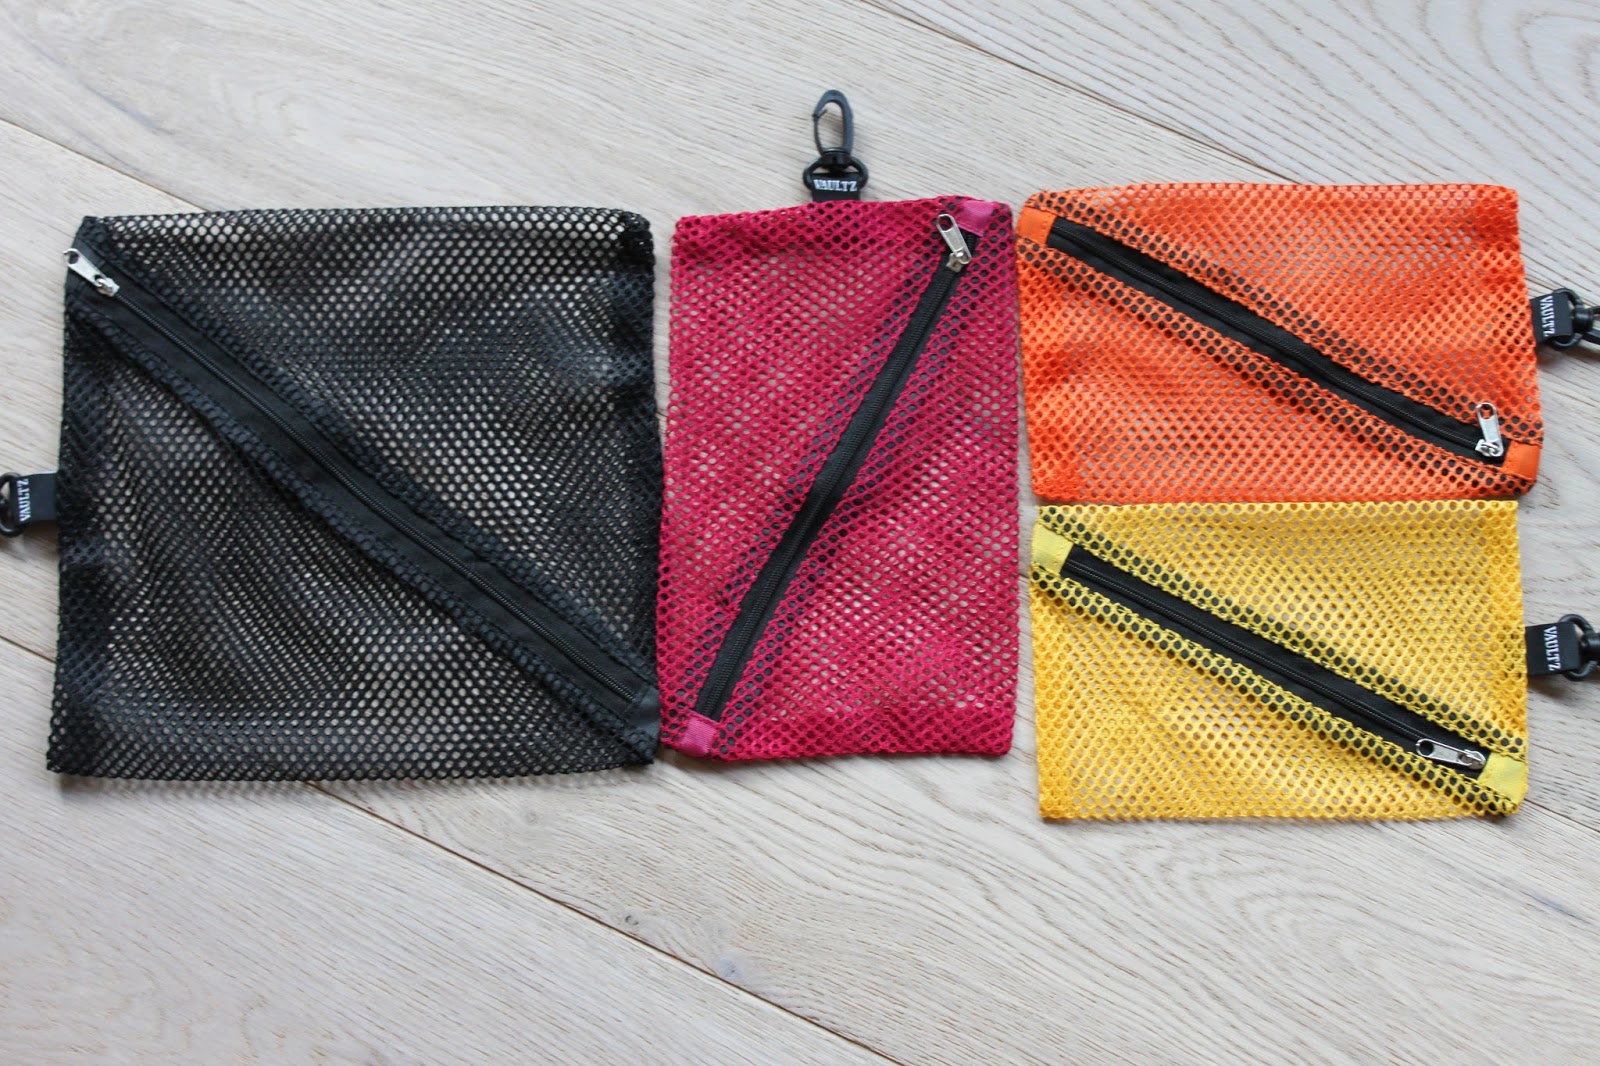 Vaultz Assorted Mesh Storage Bags with Zipper